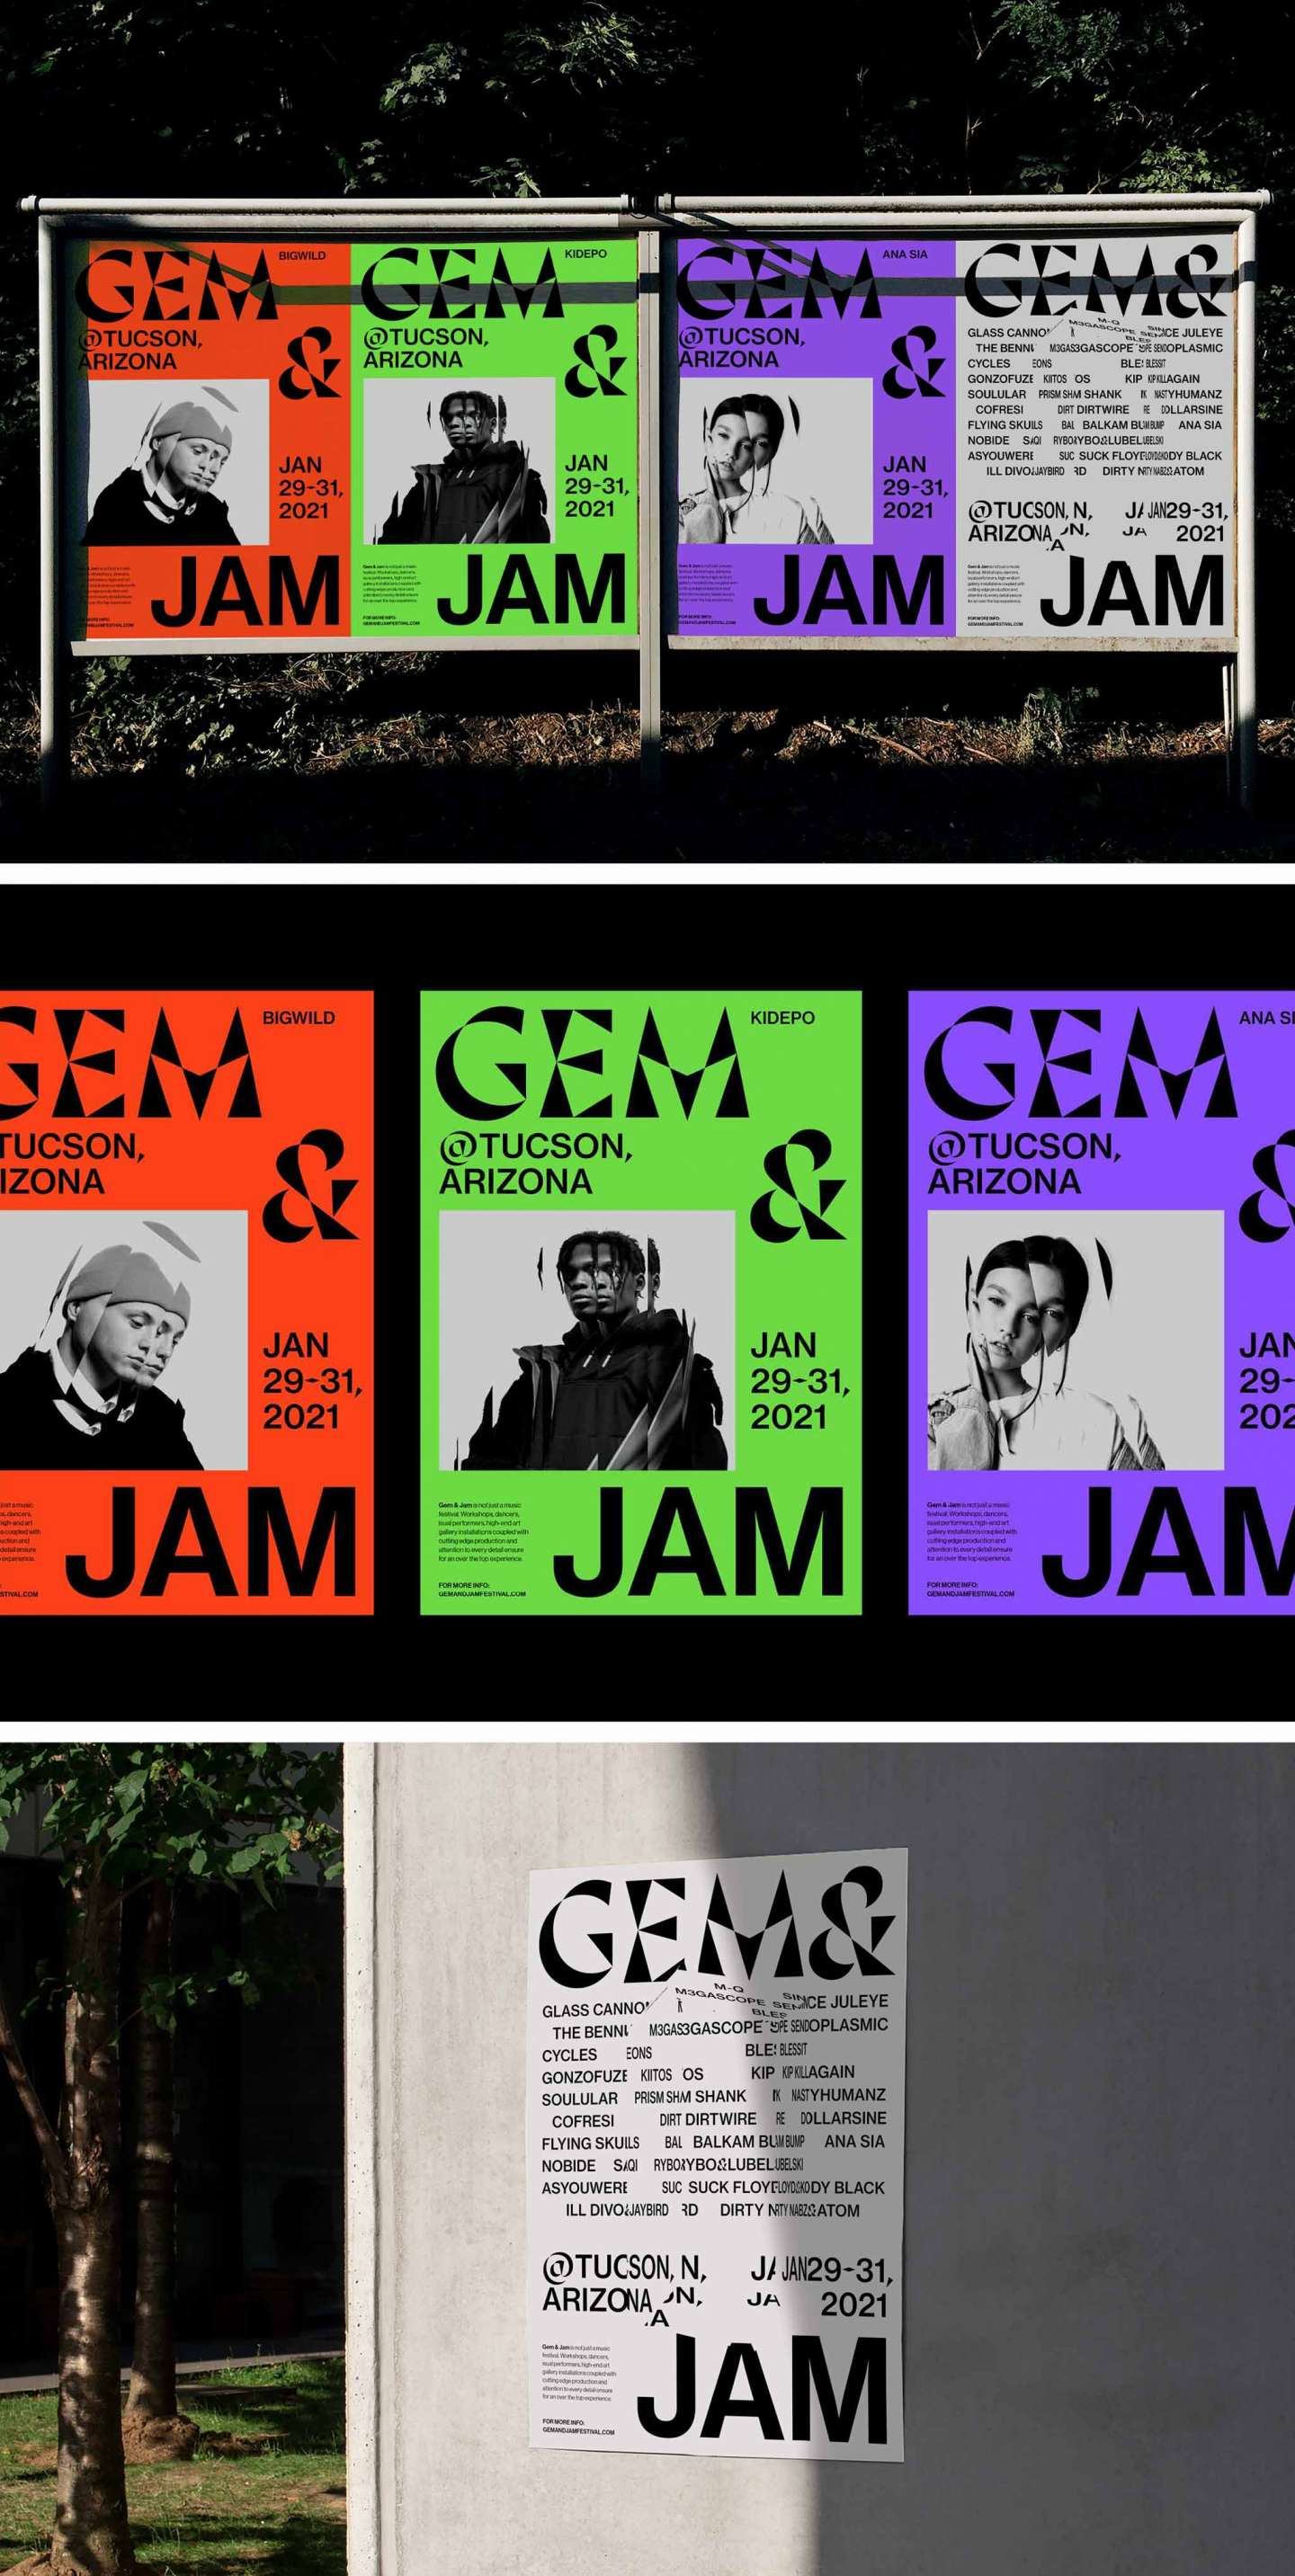 Gem & Jam Music Festival